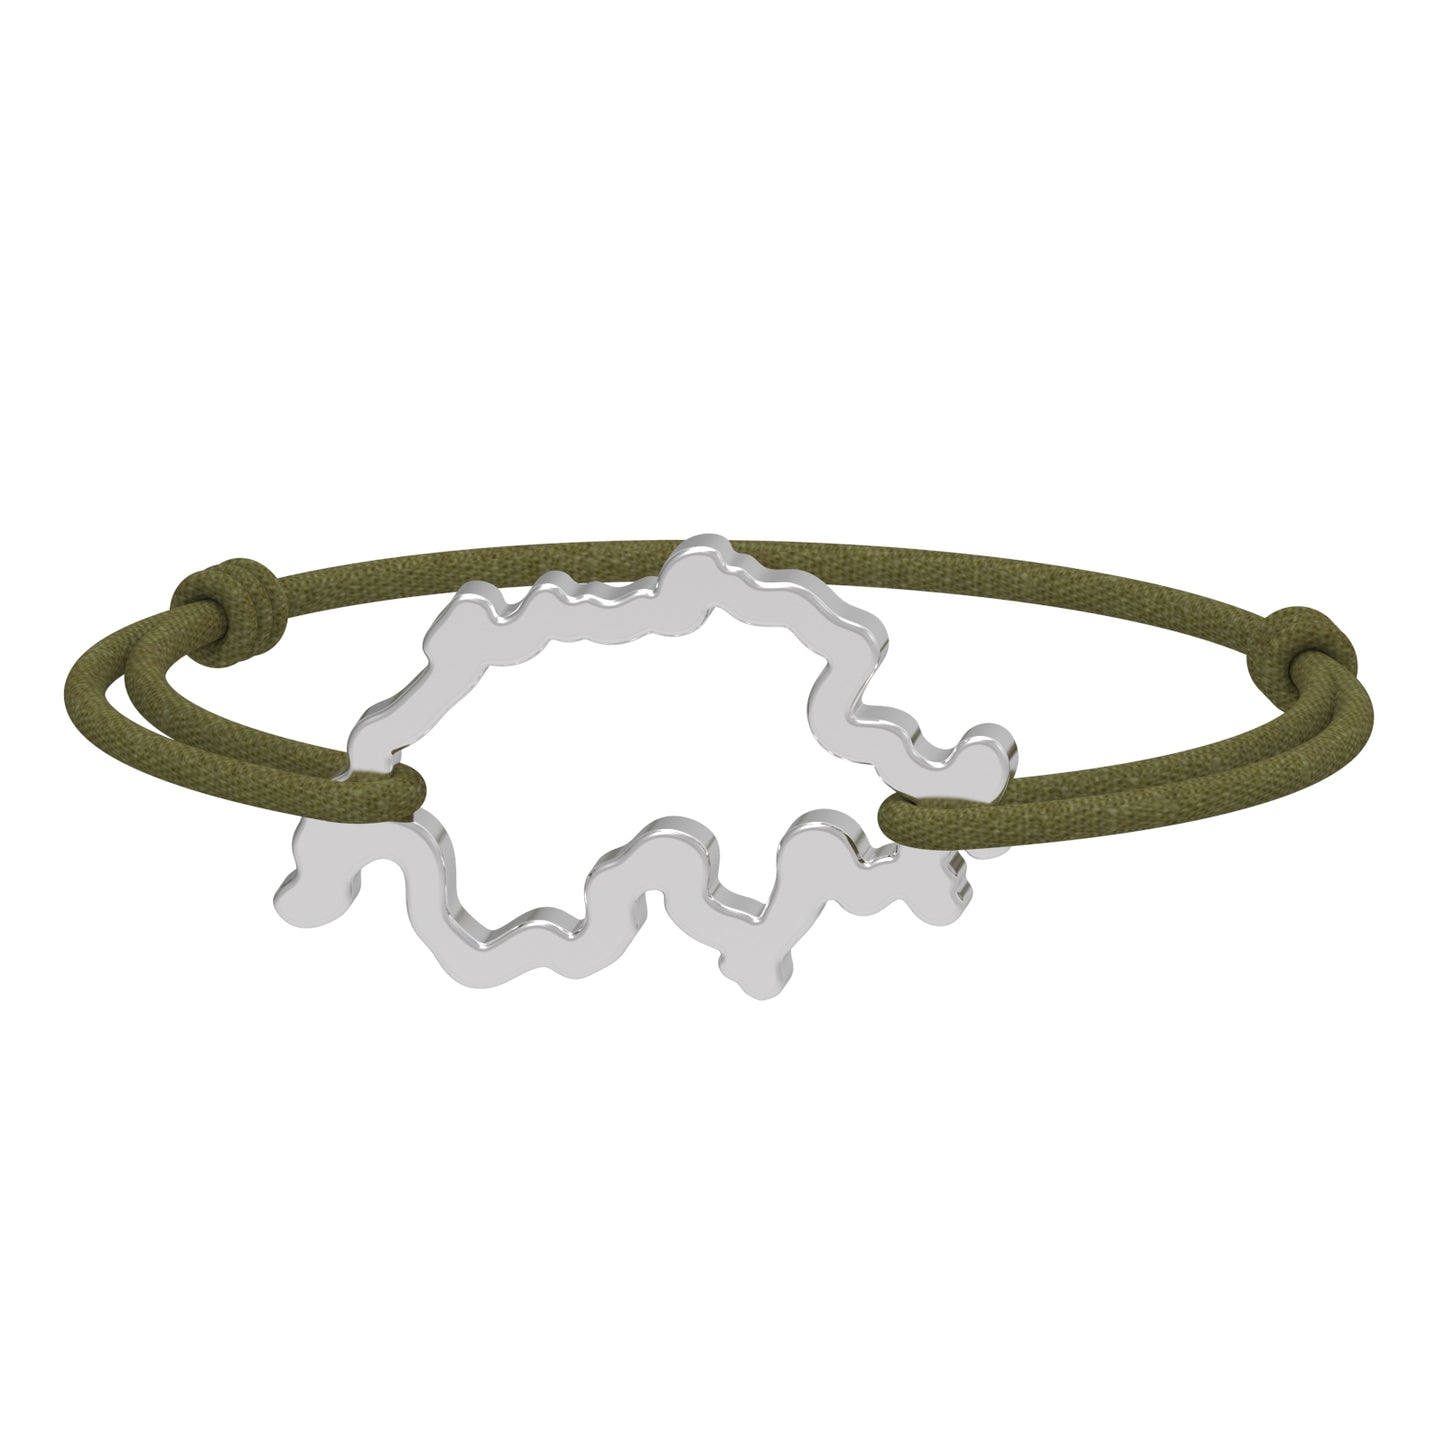 Dessin 3D du bracelet SwissMap en argent rhodié et cordon vert